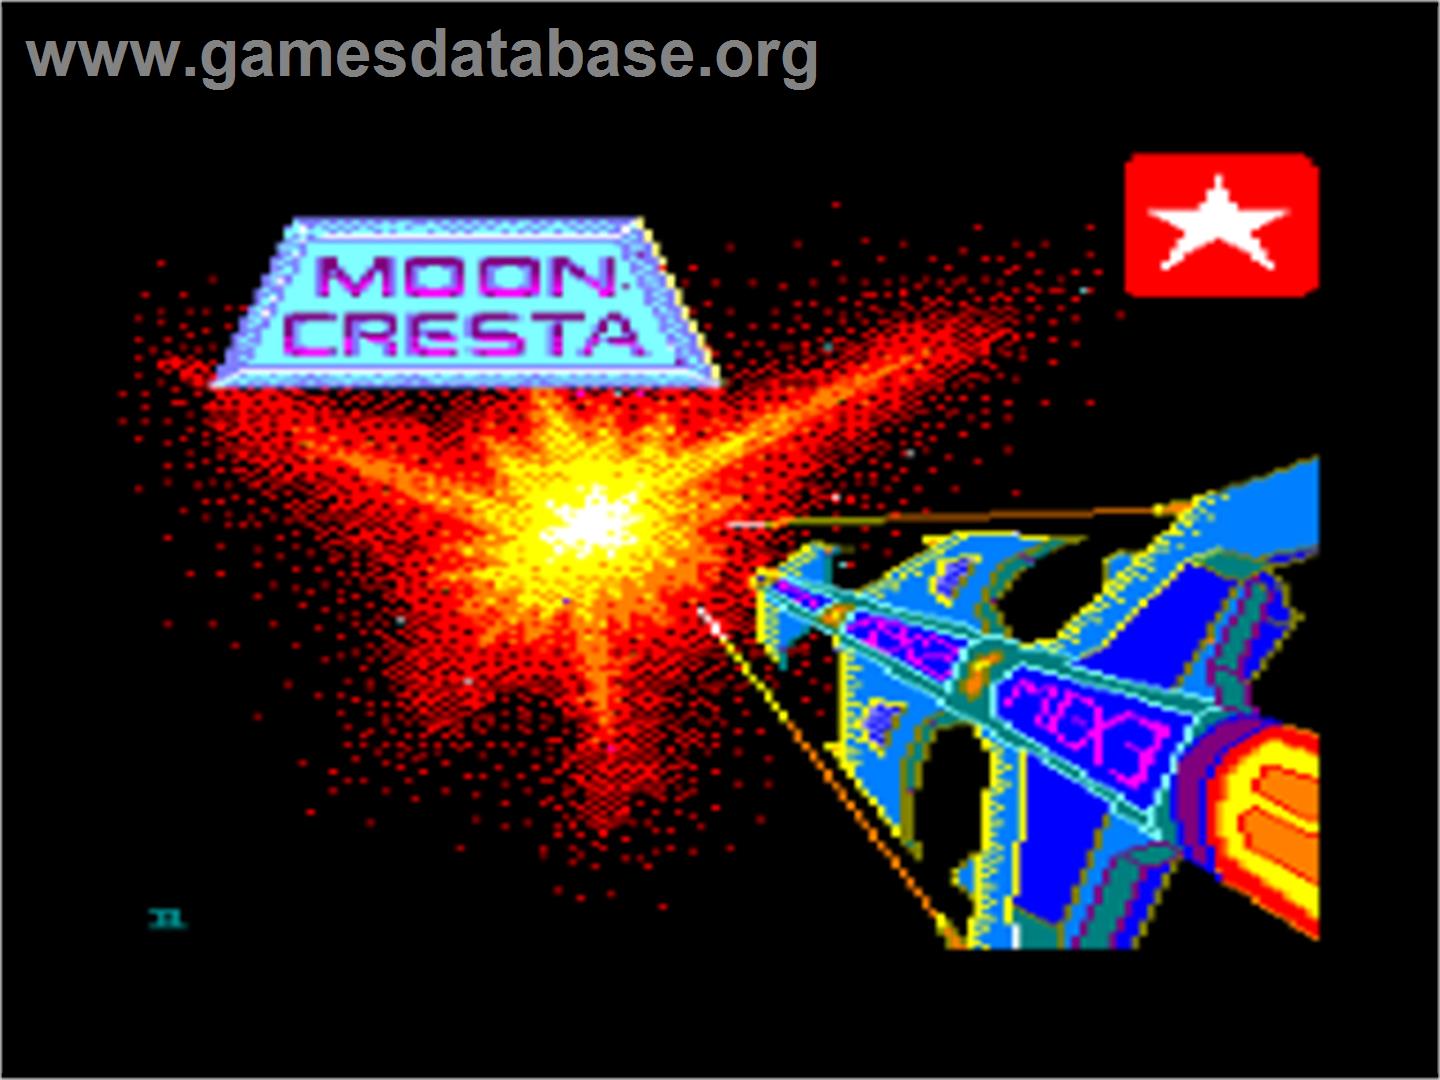 Moon Cresta - Amstrad CPC - Artwork - Title Screen